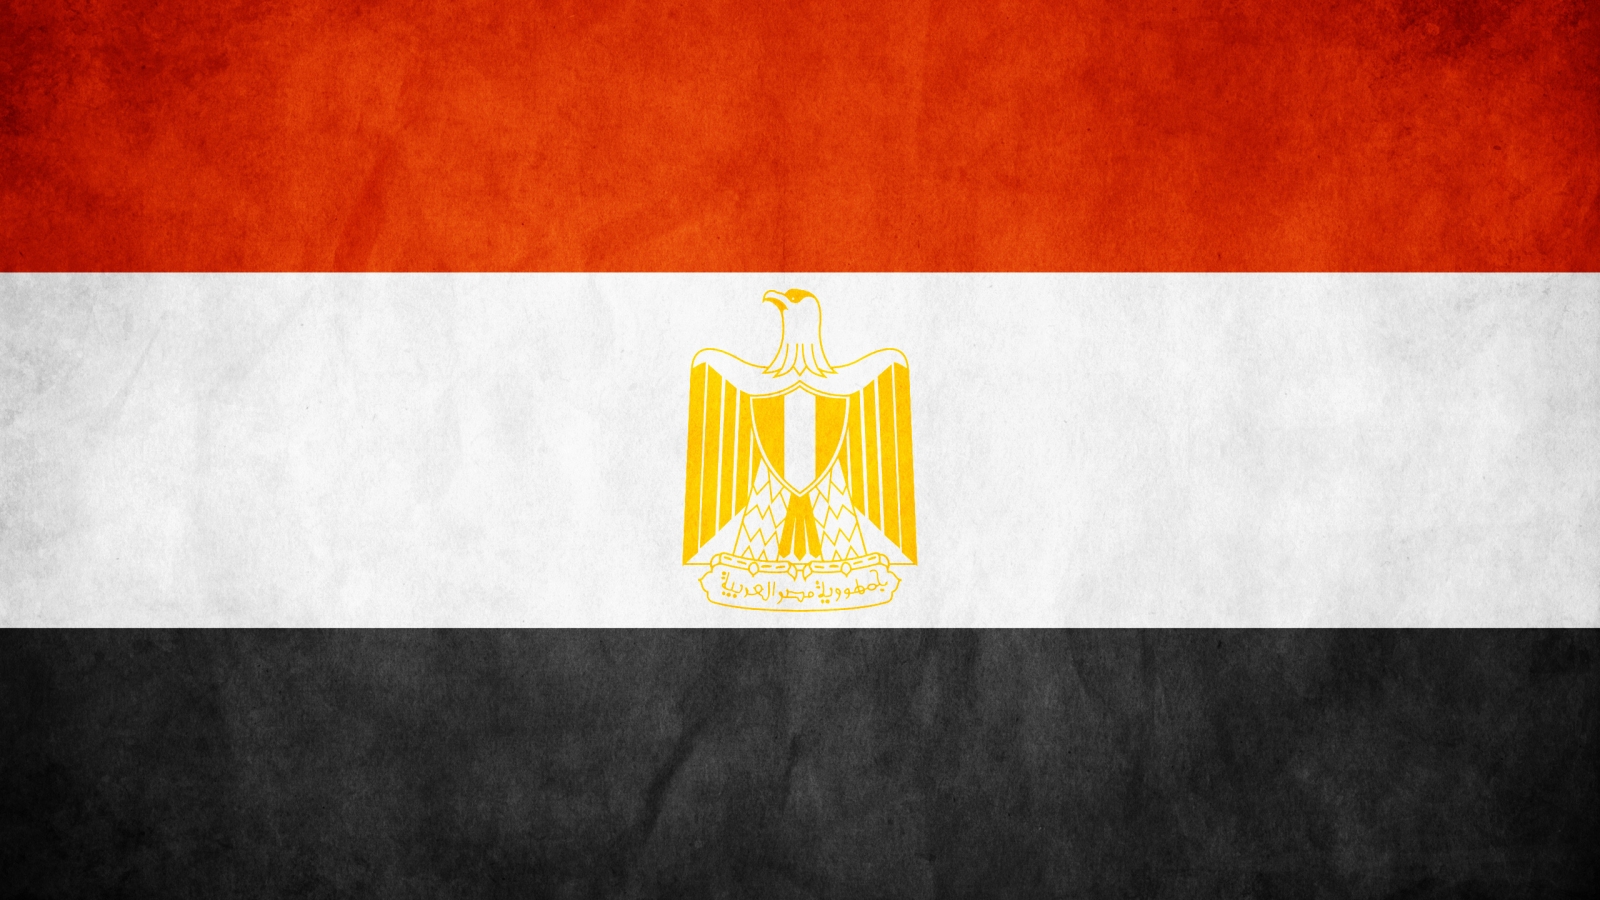 Egypt grunge flag for 1600 x 900 HDTV resolution